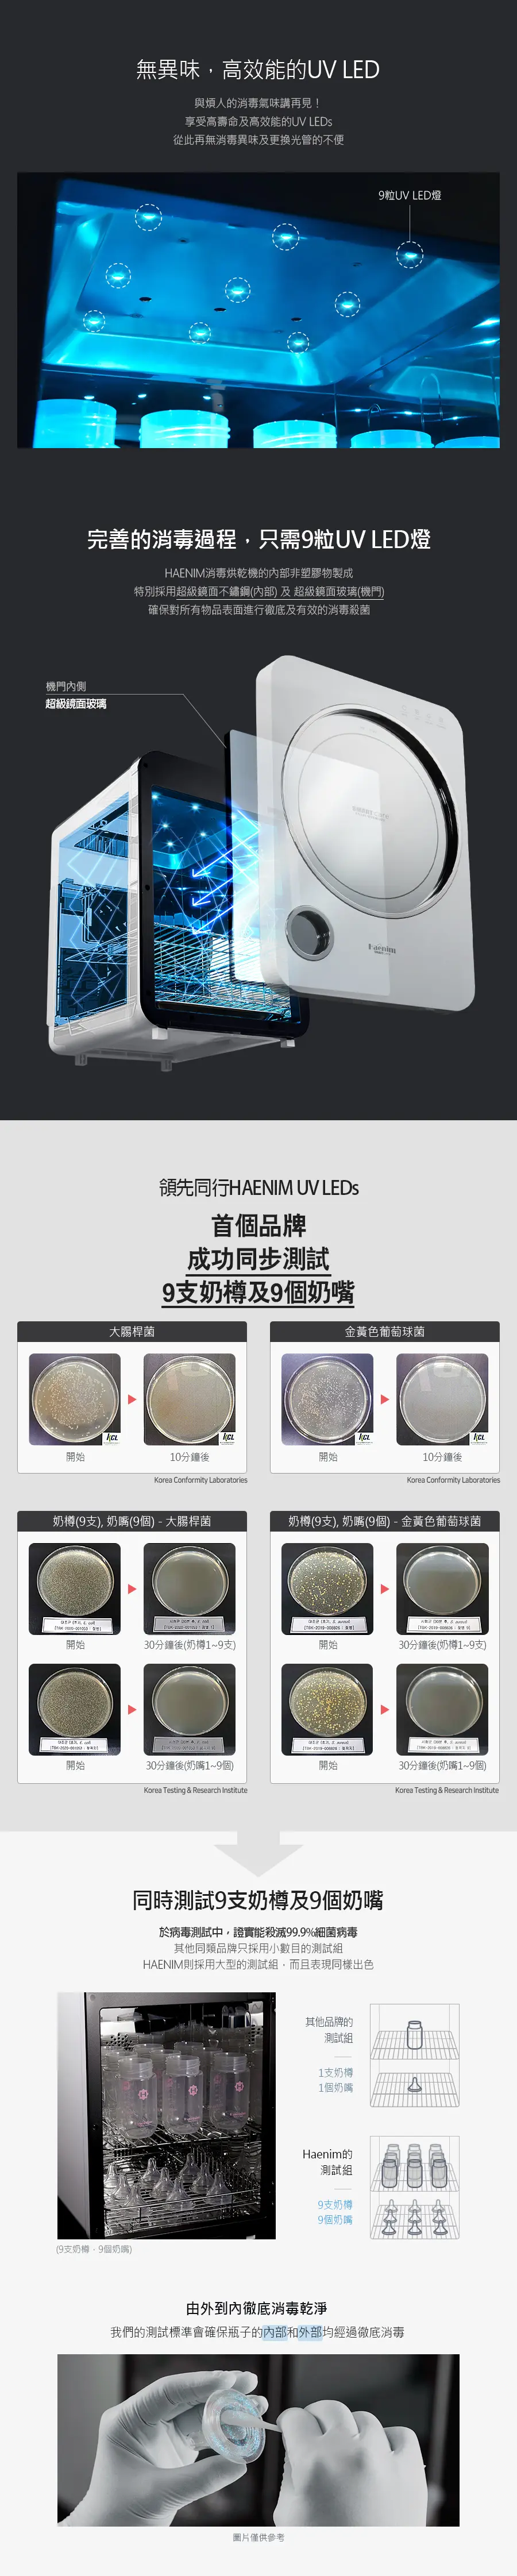 Haenim喜臨 第3代紫外線UV消毒烘乾機(LED版) 